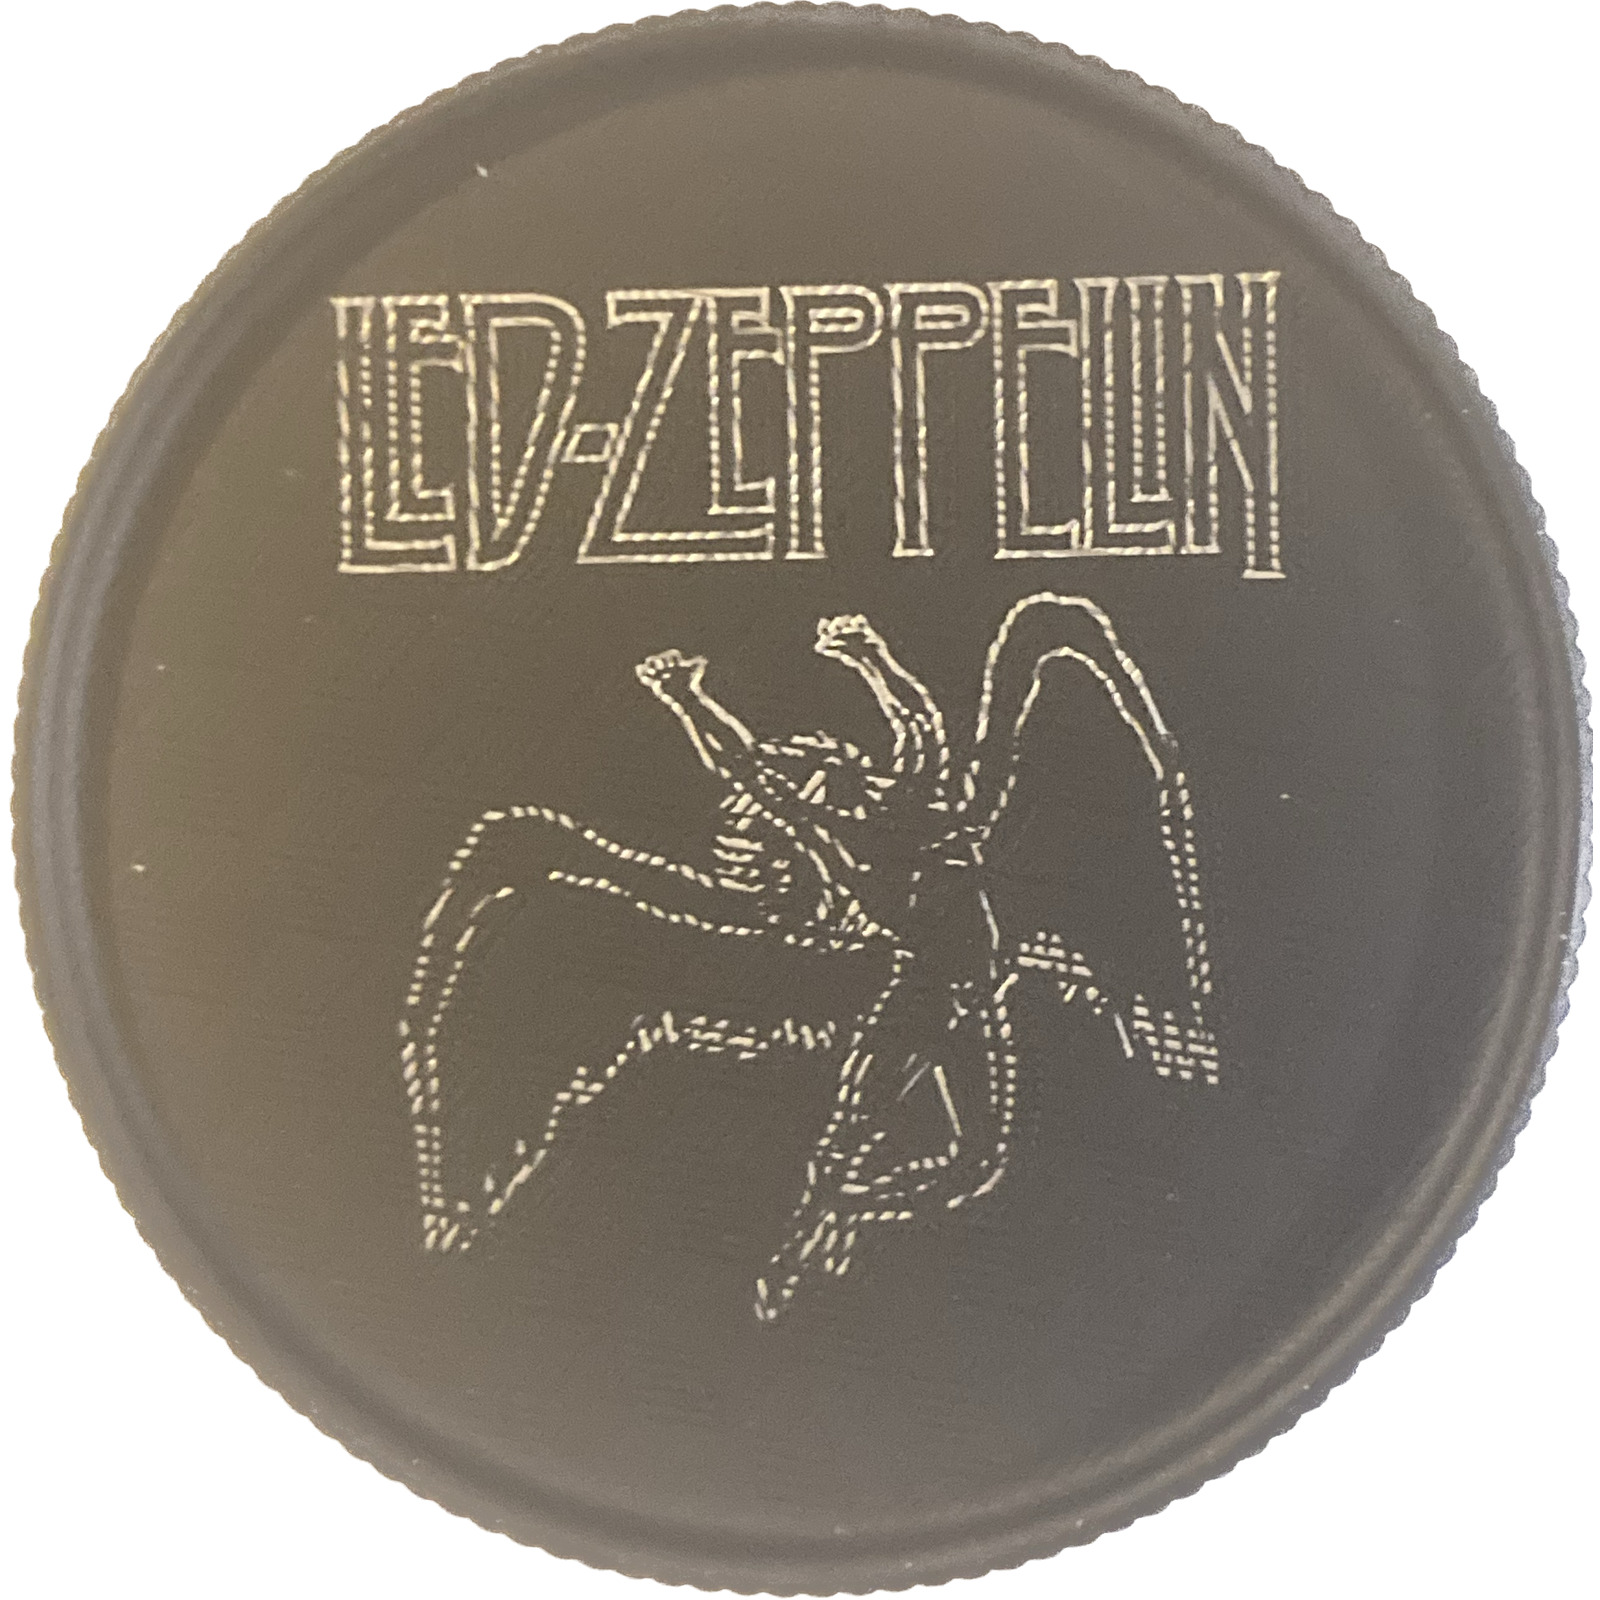 Led Zeppelin Engraved Spice Grinder